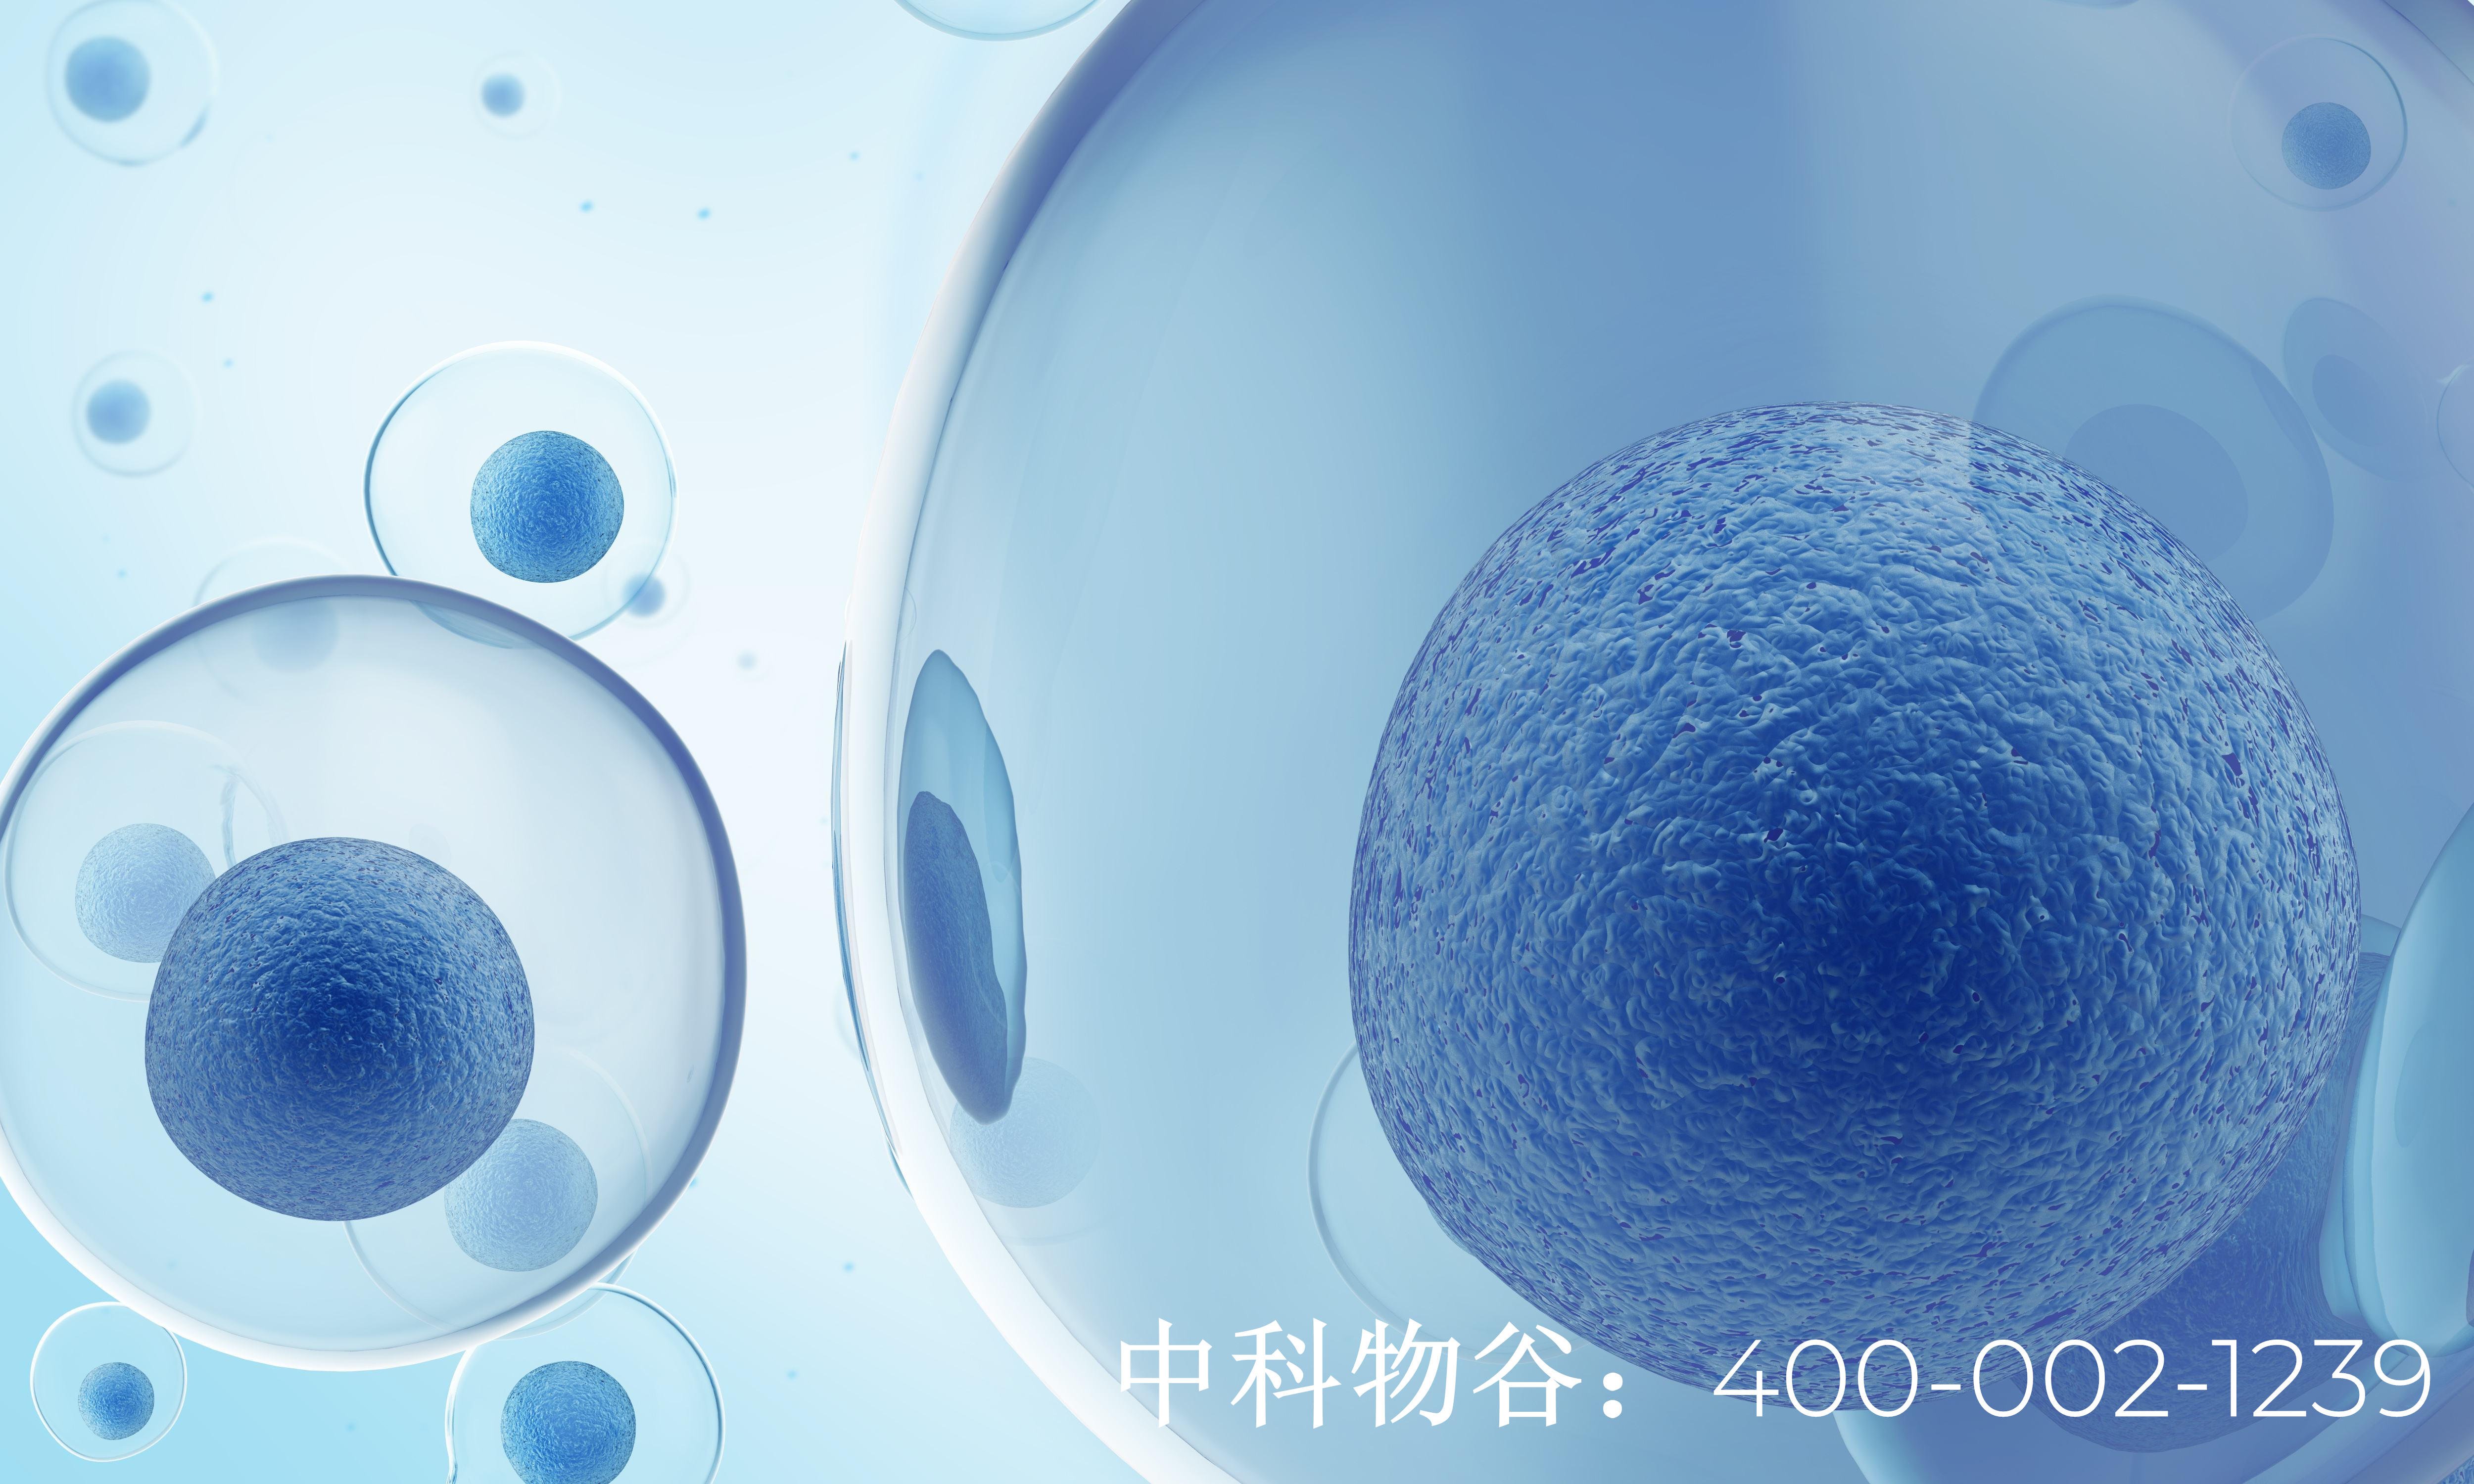 中国七大干细胞库都是-中科生物干细胞